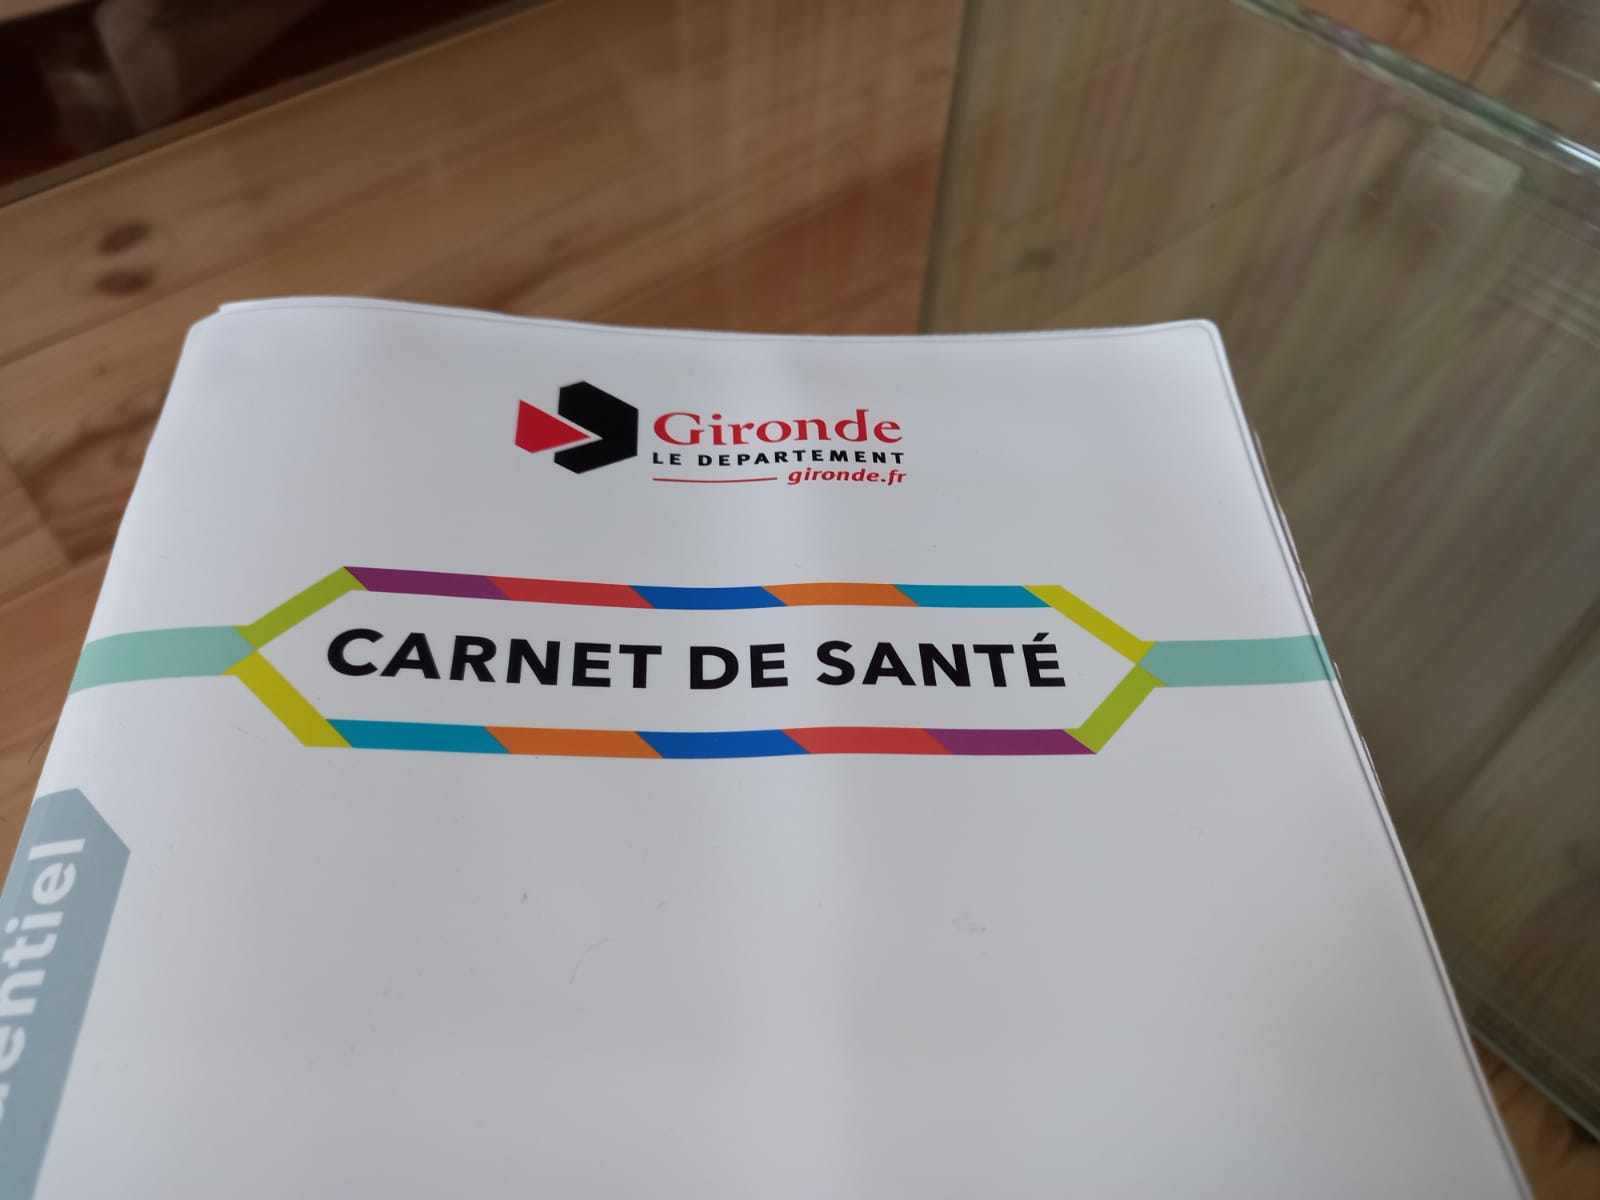 Carnet de santé (French Edition)